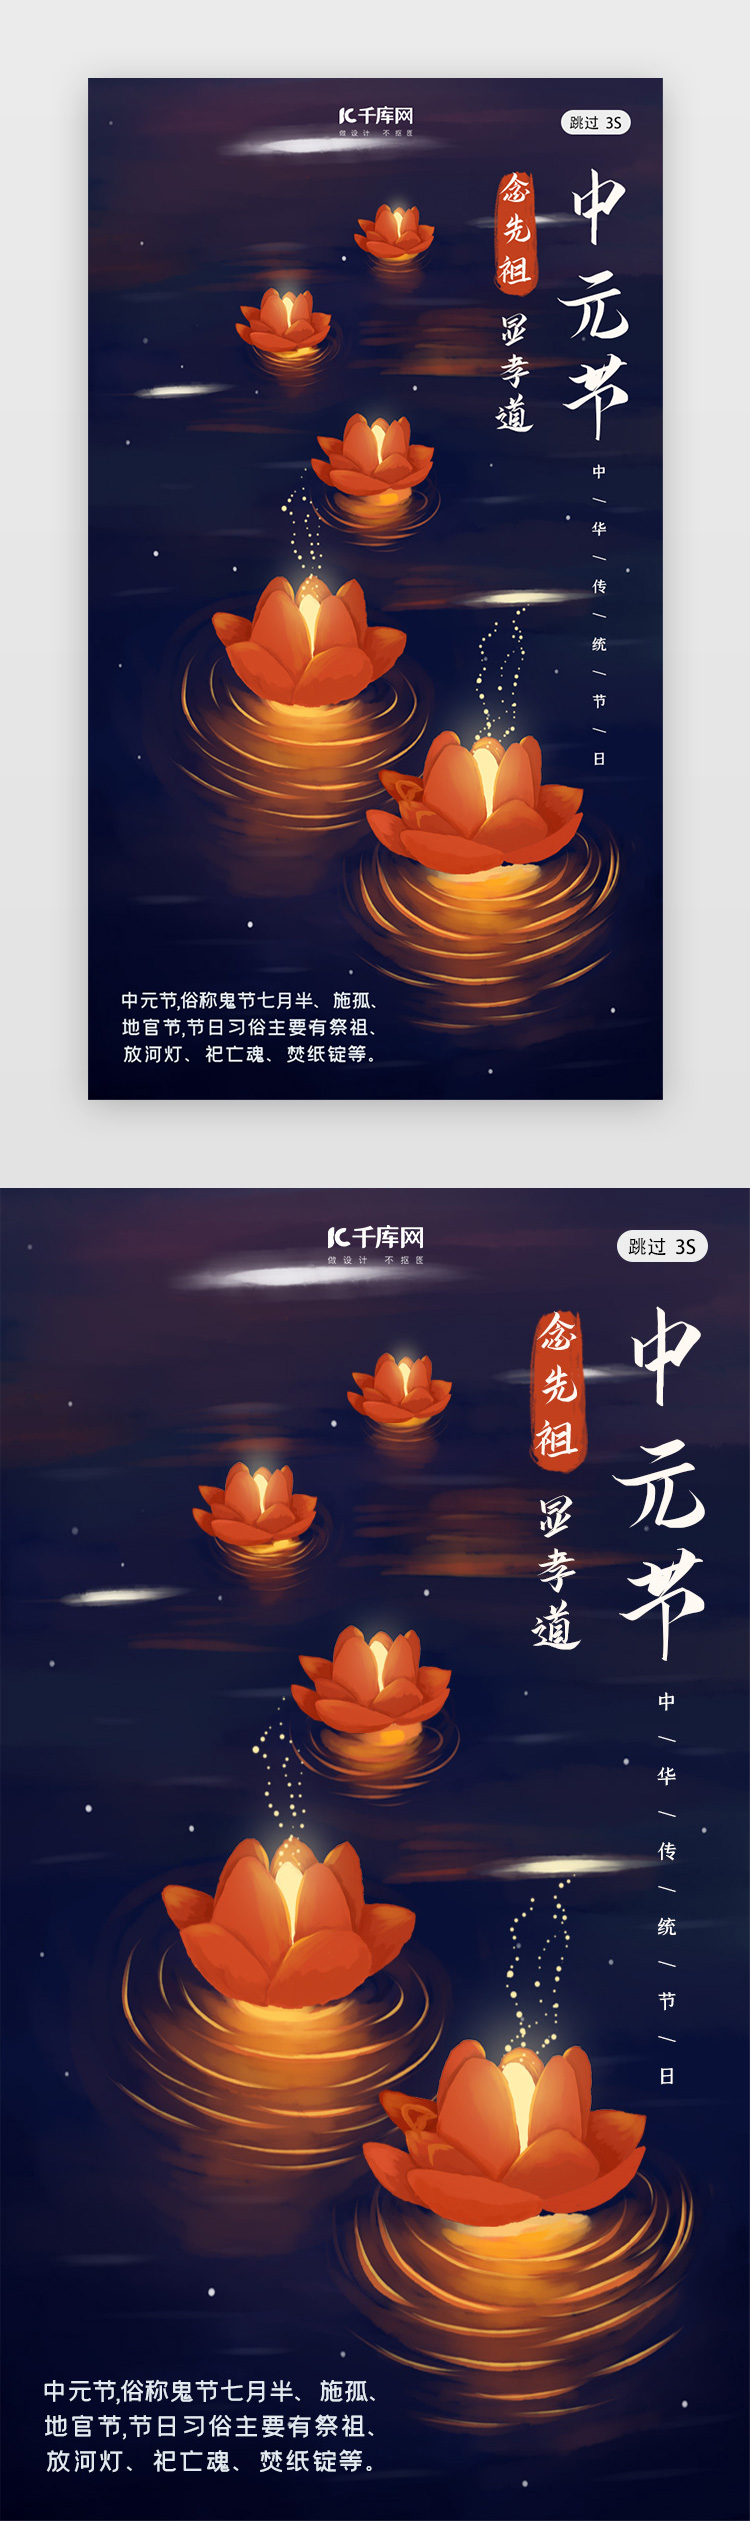 中元节传统节日中国风闪屏页启动页引导页图片